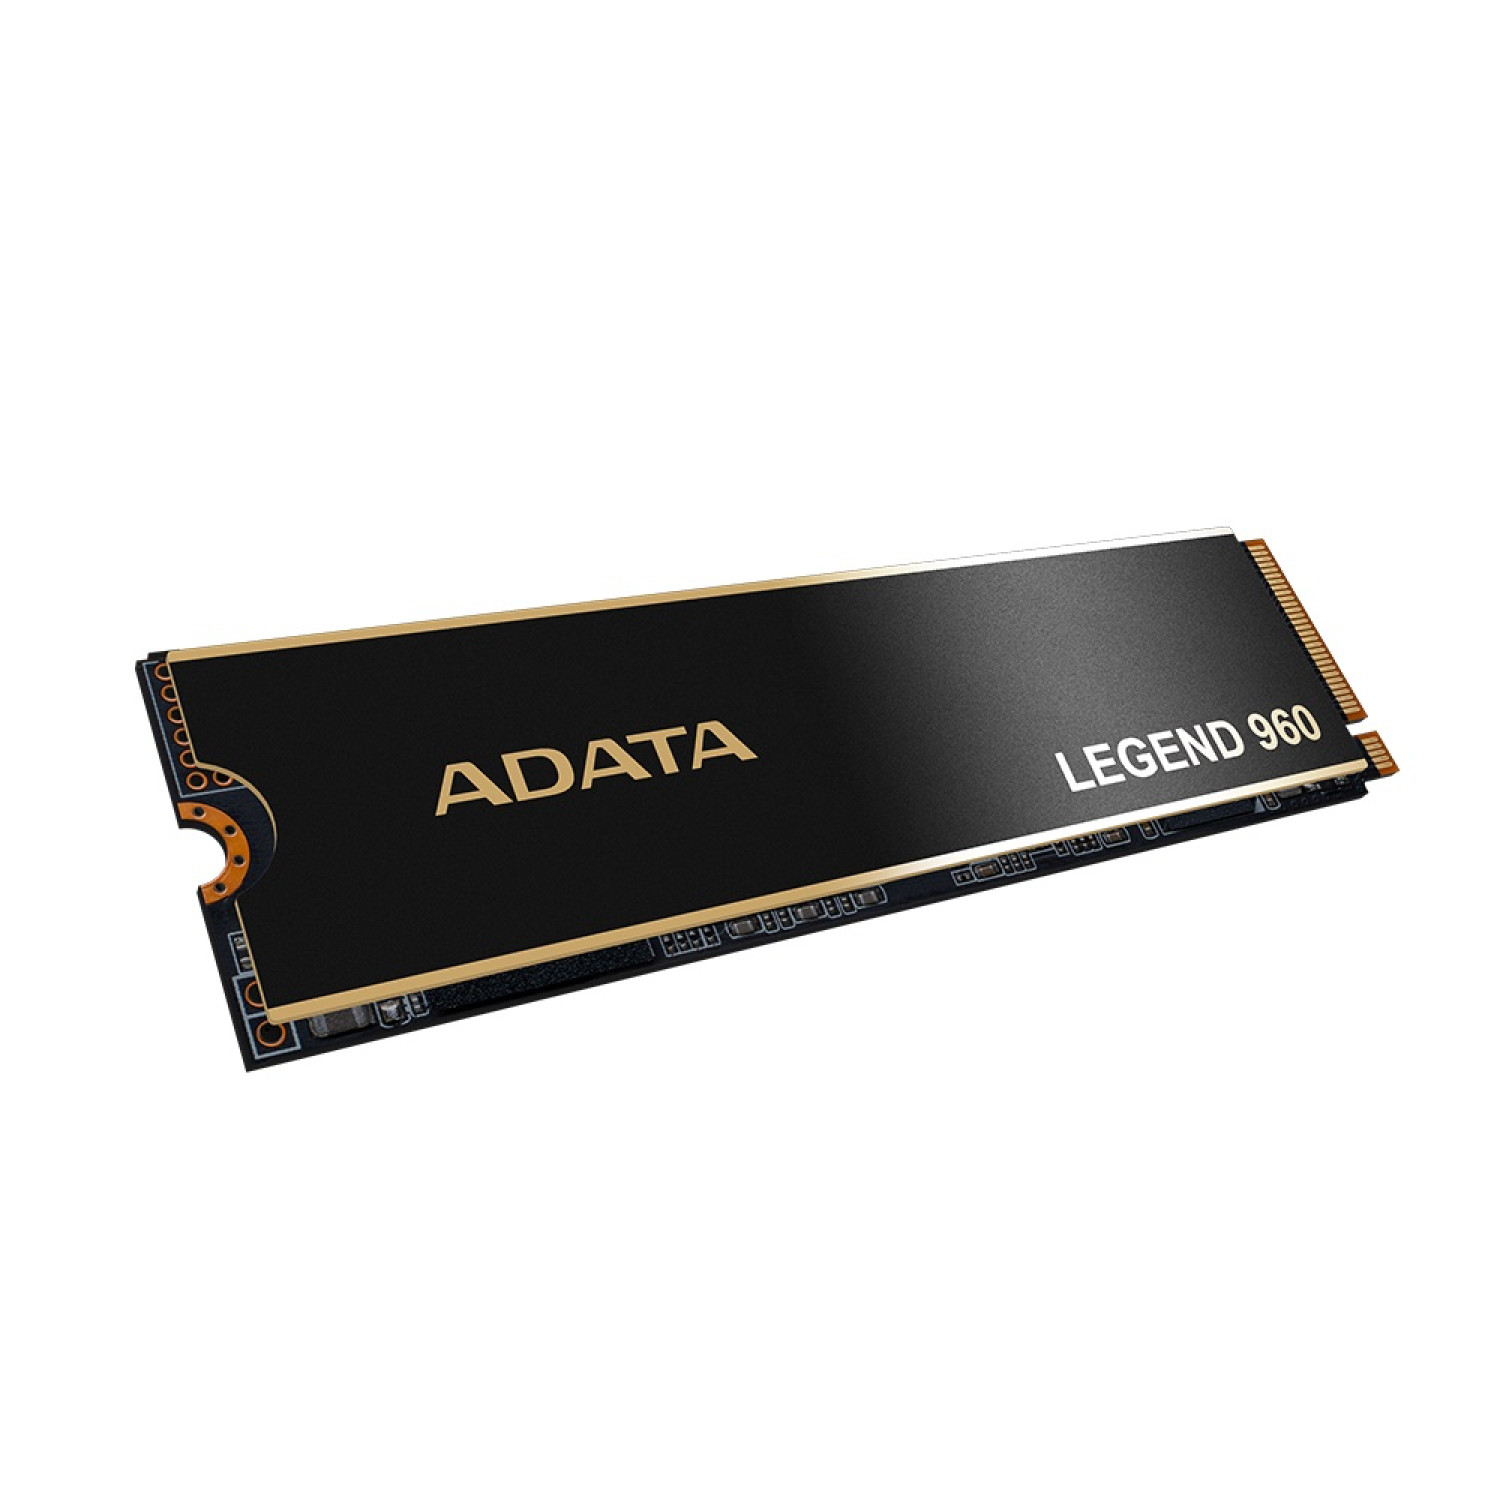 حافظه اس اس دی ADATA Legend 960 1TB-2